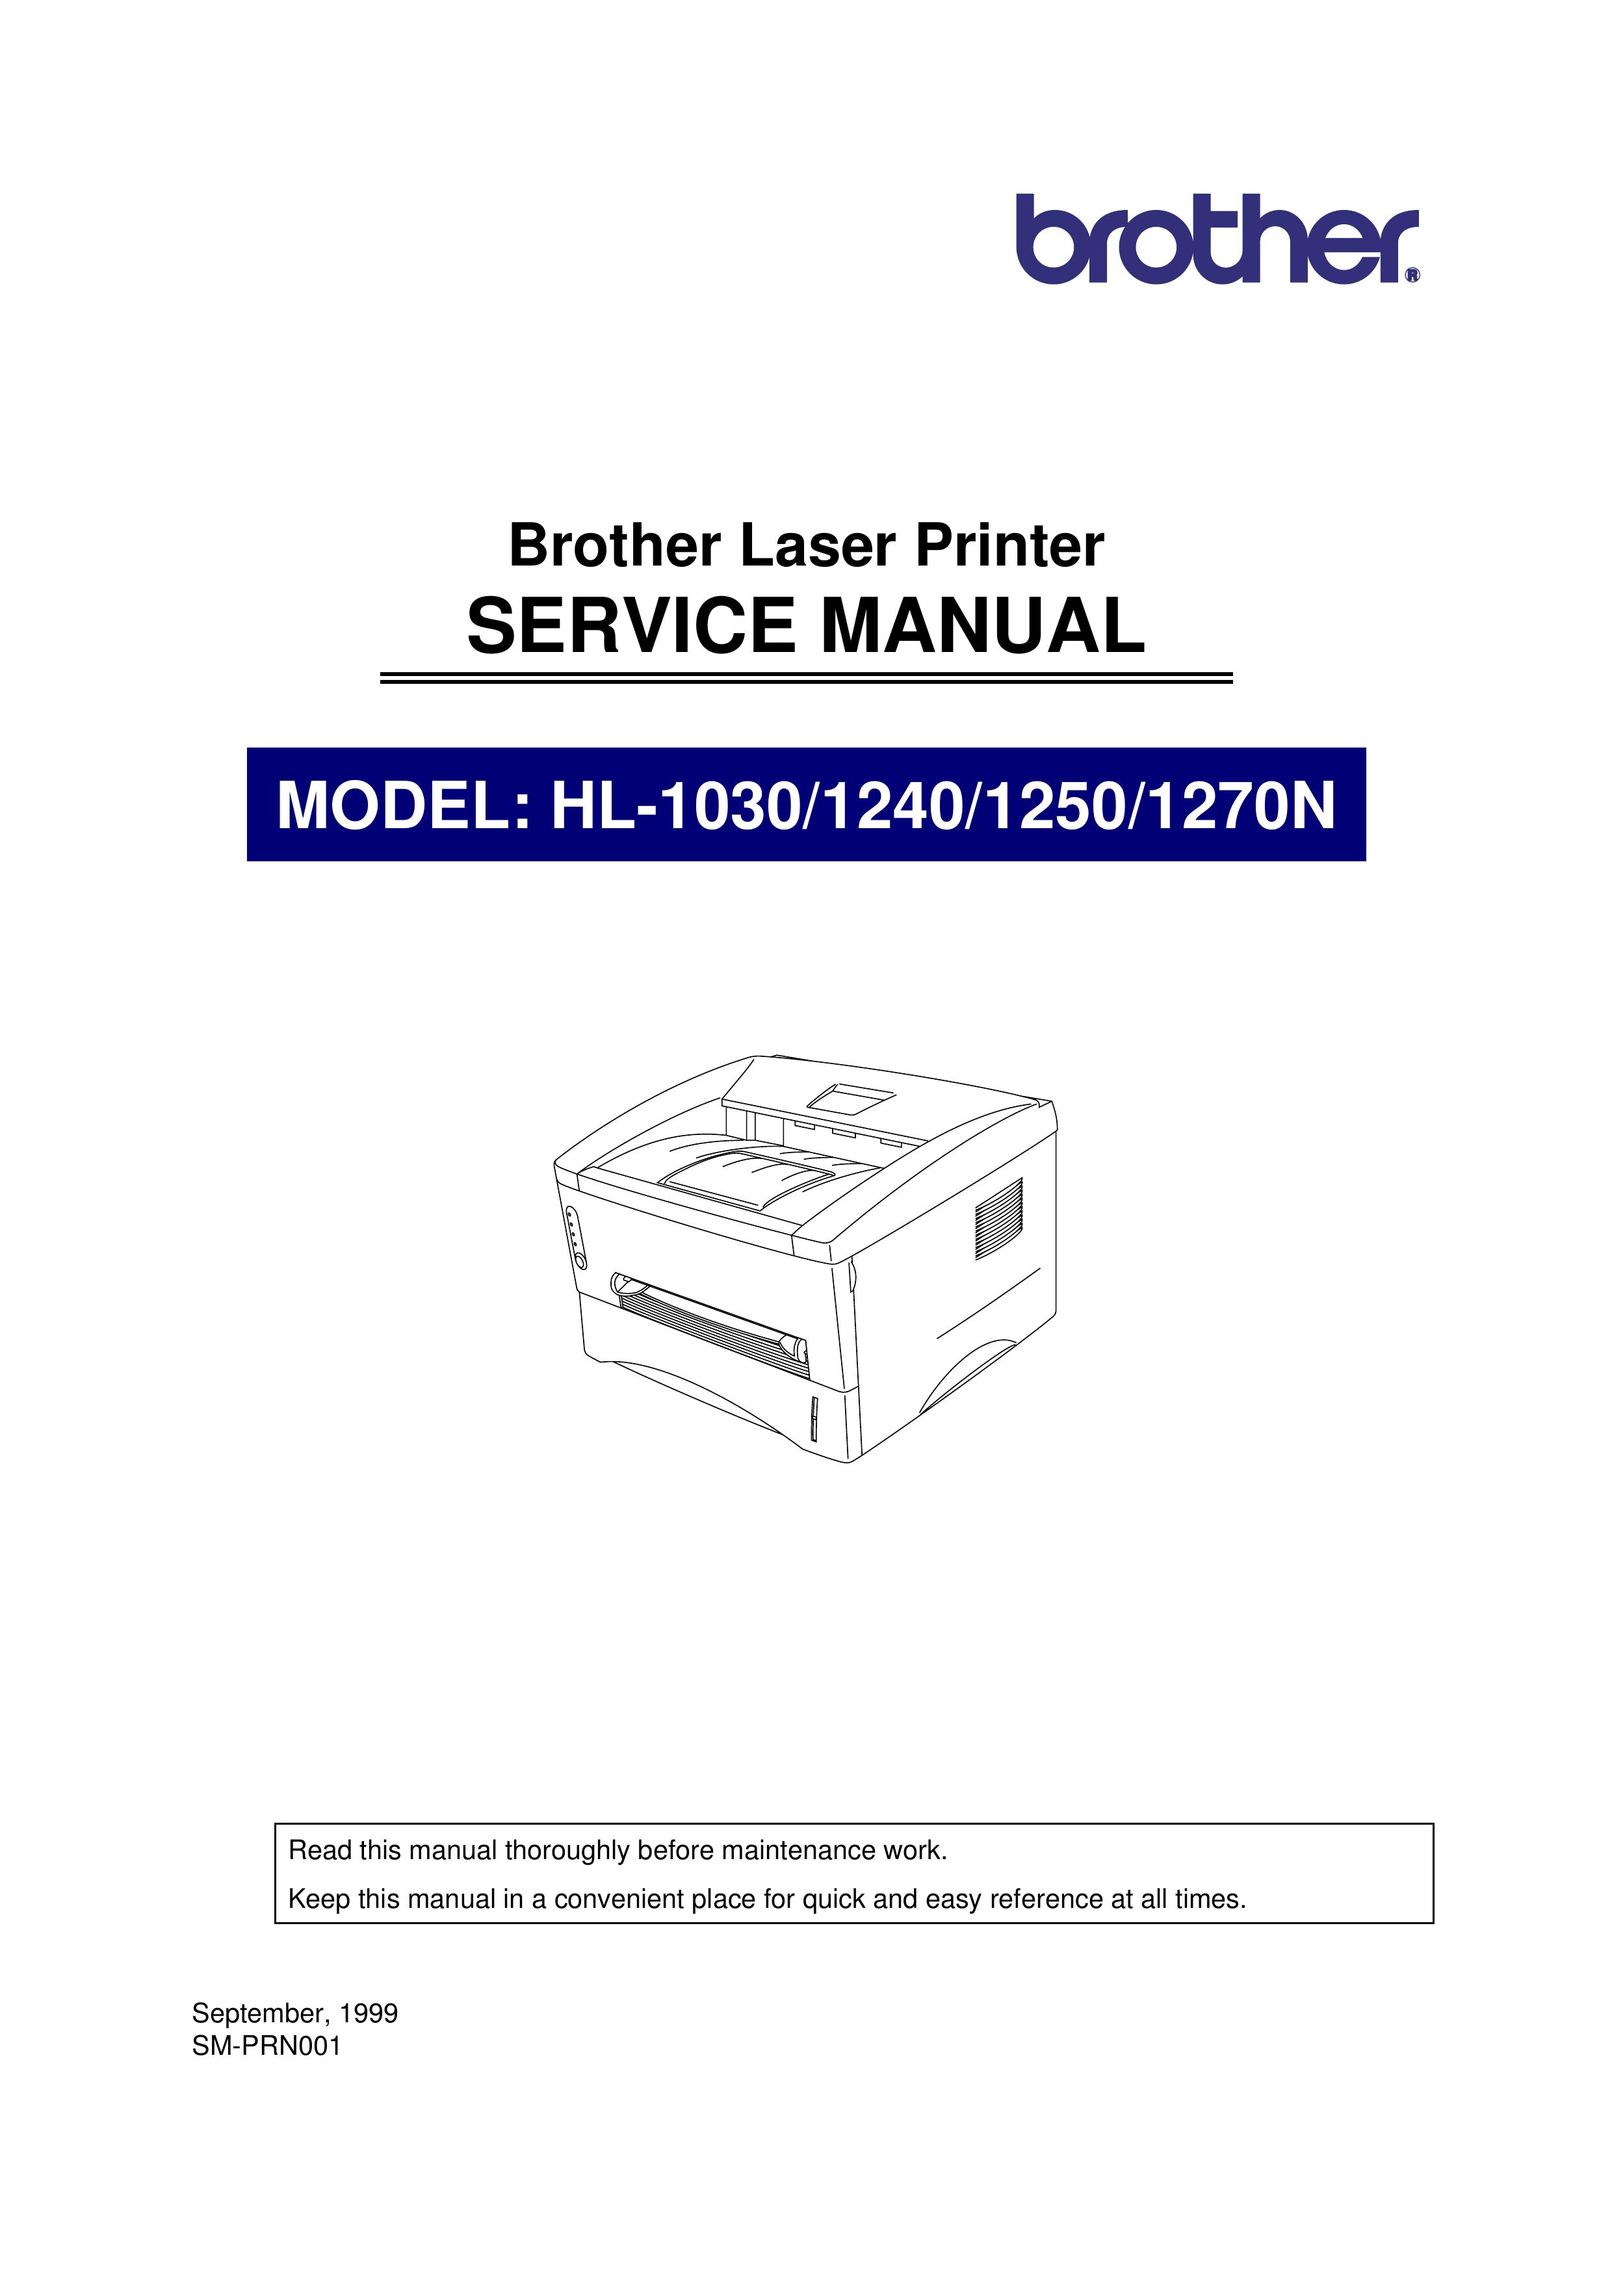 Brother 1250 Printer User Manual